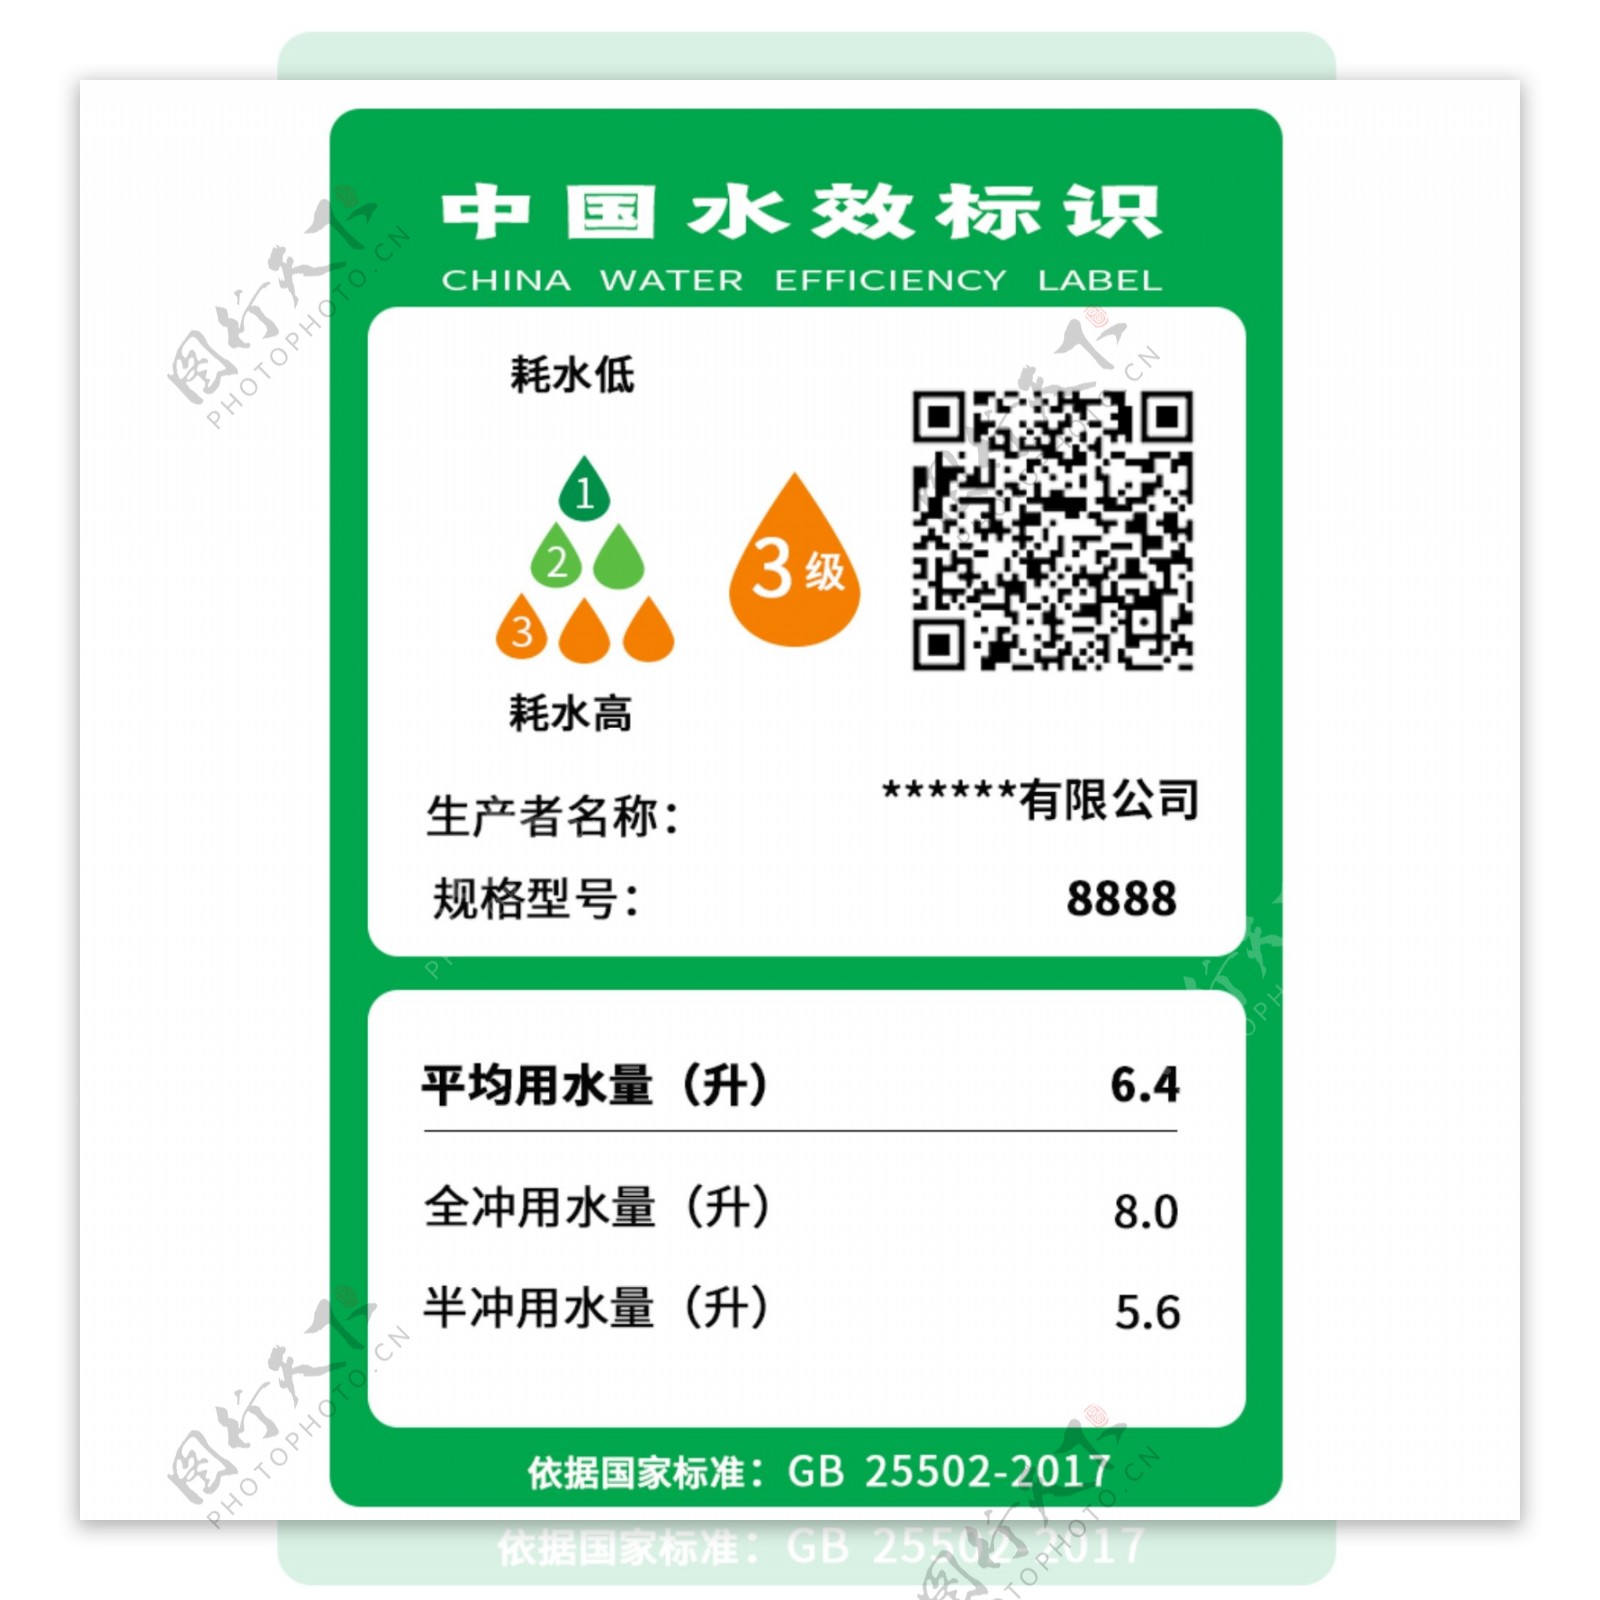 马桶中国水效标识国家节水标识